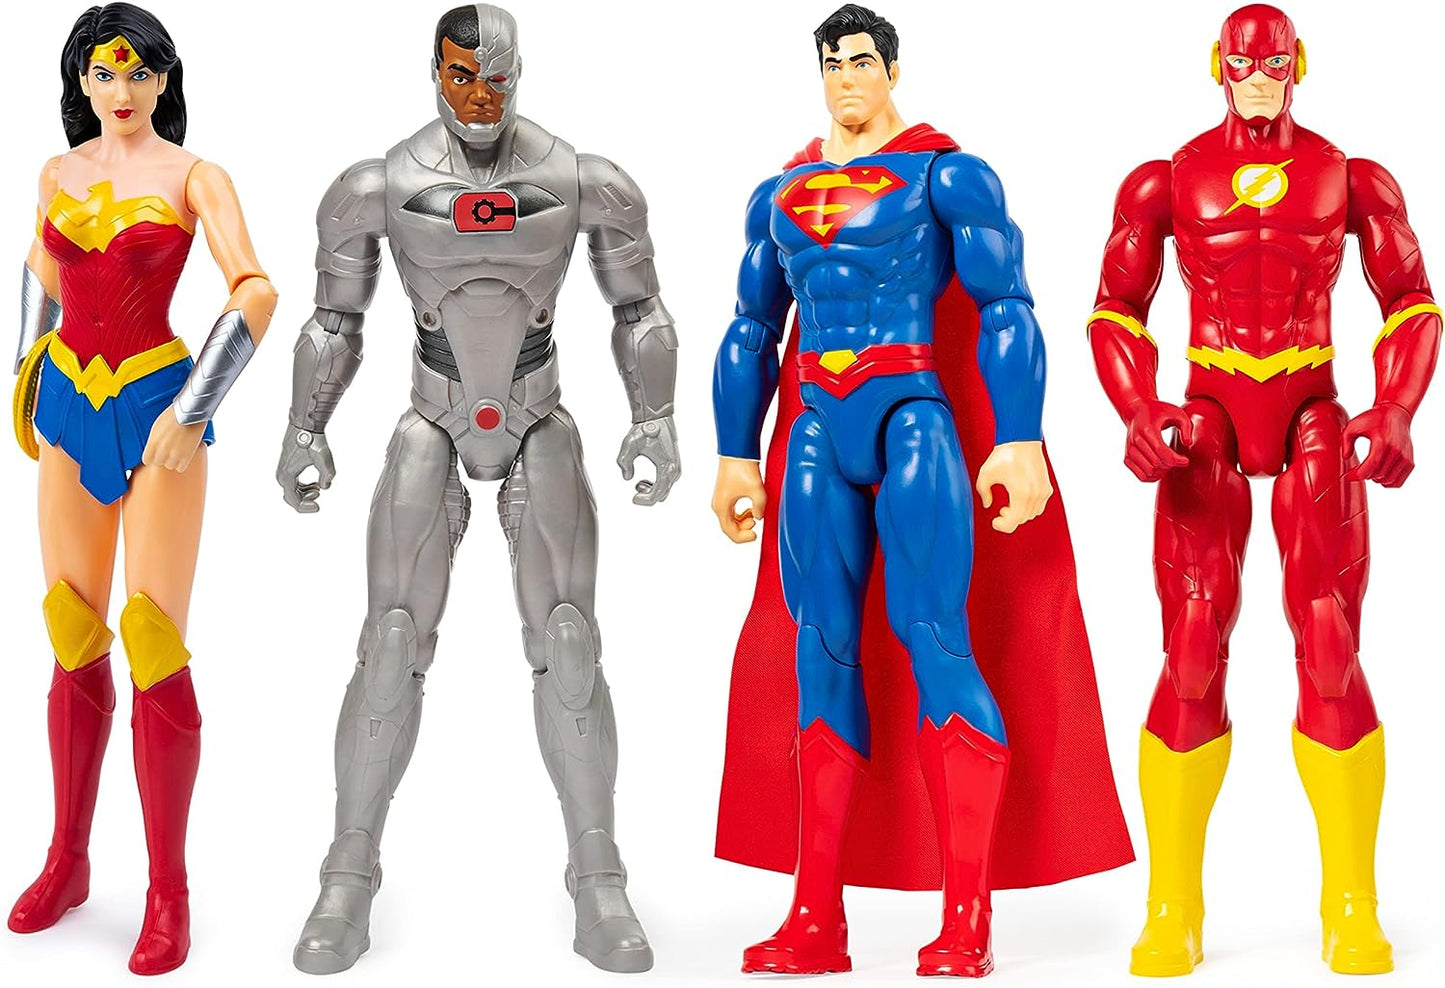 DC Universe - Action Figure 4-Pack Superman, Flash, Wonder Woman, Cyborg | 30.5cm